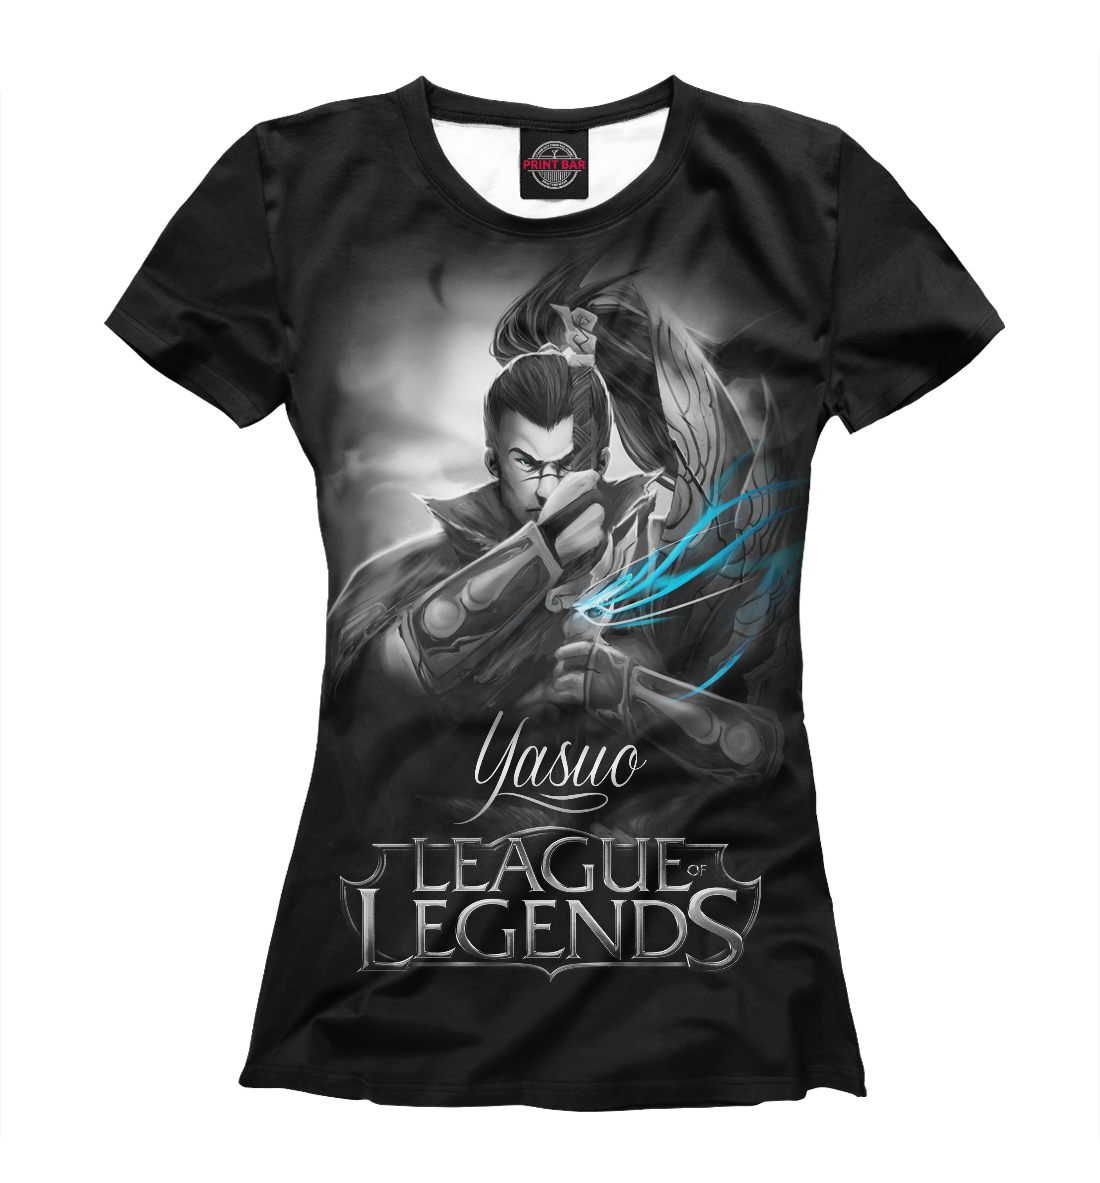 Футболка League of Legends. Ясуо для женщин, артикул: LOL-609054-fut-1mp